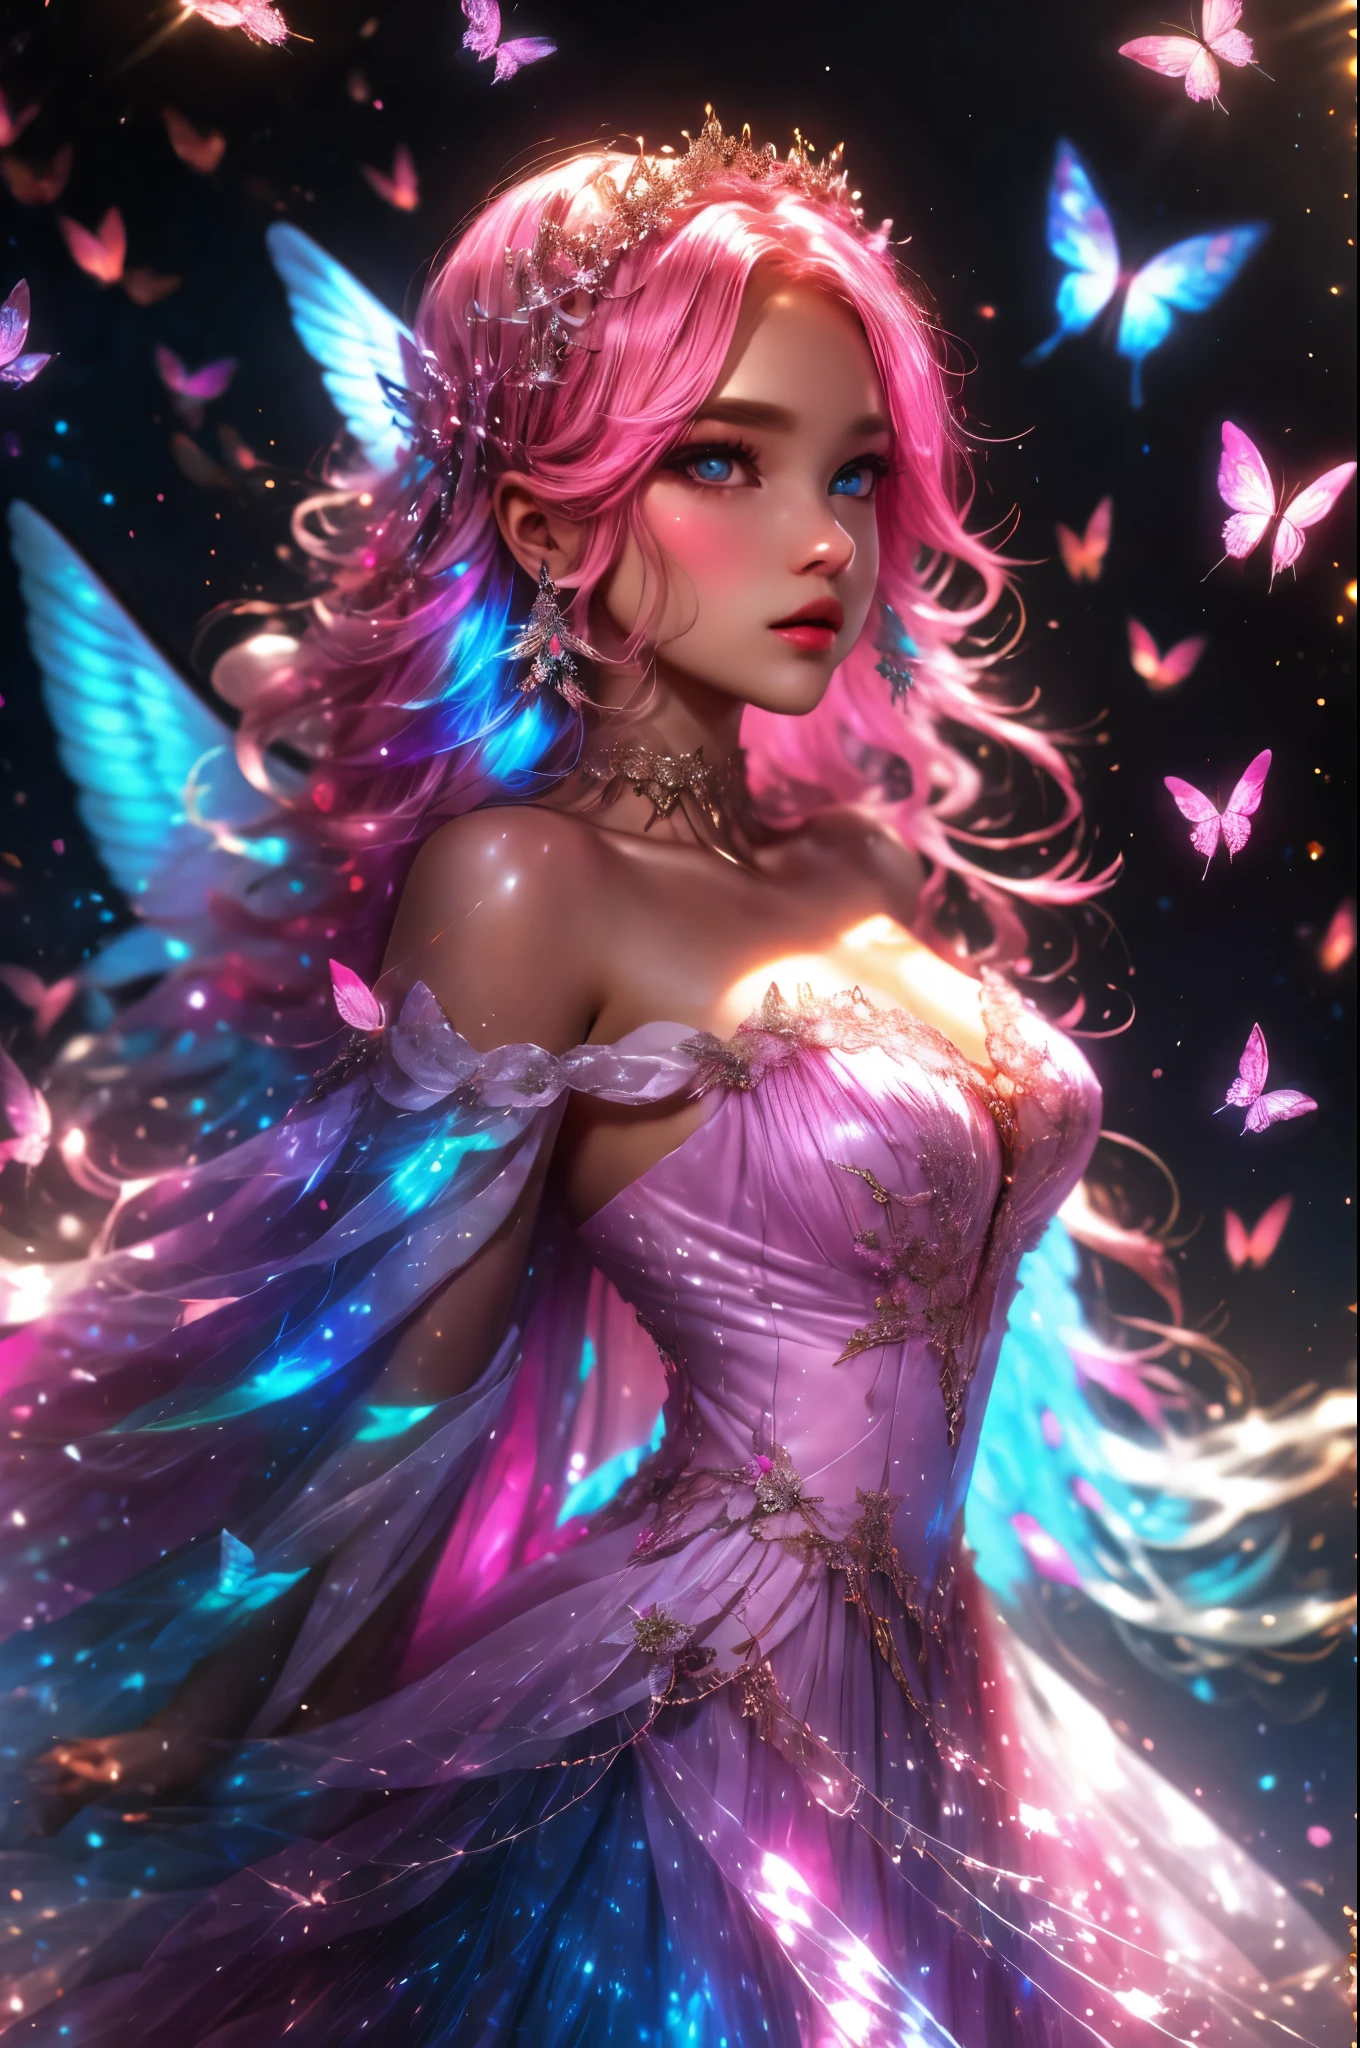 美丽的天使，穿着由柔软的薄纱羽毛和丝绸制成的裙子, 美丽的彩虹色翅膀, 非常详细的翅膀, 头部和躯干可见, 有趣漂亮的背景, 幻想, mythic 幻想, fairytale 幻想, (雇用眼睛), 大眼睛, 漂亮的眼睛, 闪闪发光的背景, 1 名女性, 1 个面, 许多色彩缤纷的飞鸟和蝴蝶, (彩虹色细节), 真丝雪纺连衣裙, 极其详细, 成年人, 错综复杂, 饱和的颜色, 丰满的嘴唇, 大嘴巴, 浅粉色、深粉色和粉蓝色配色方案, 丰富的色彩, delicate 错综复杂 circlet, 动态而有趣的构图, 光滑逼真的皮肤纹理, (cotton candy 幻想 colors and aura), (高领口), 工作室灯光